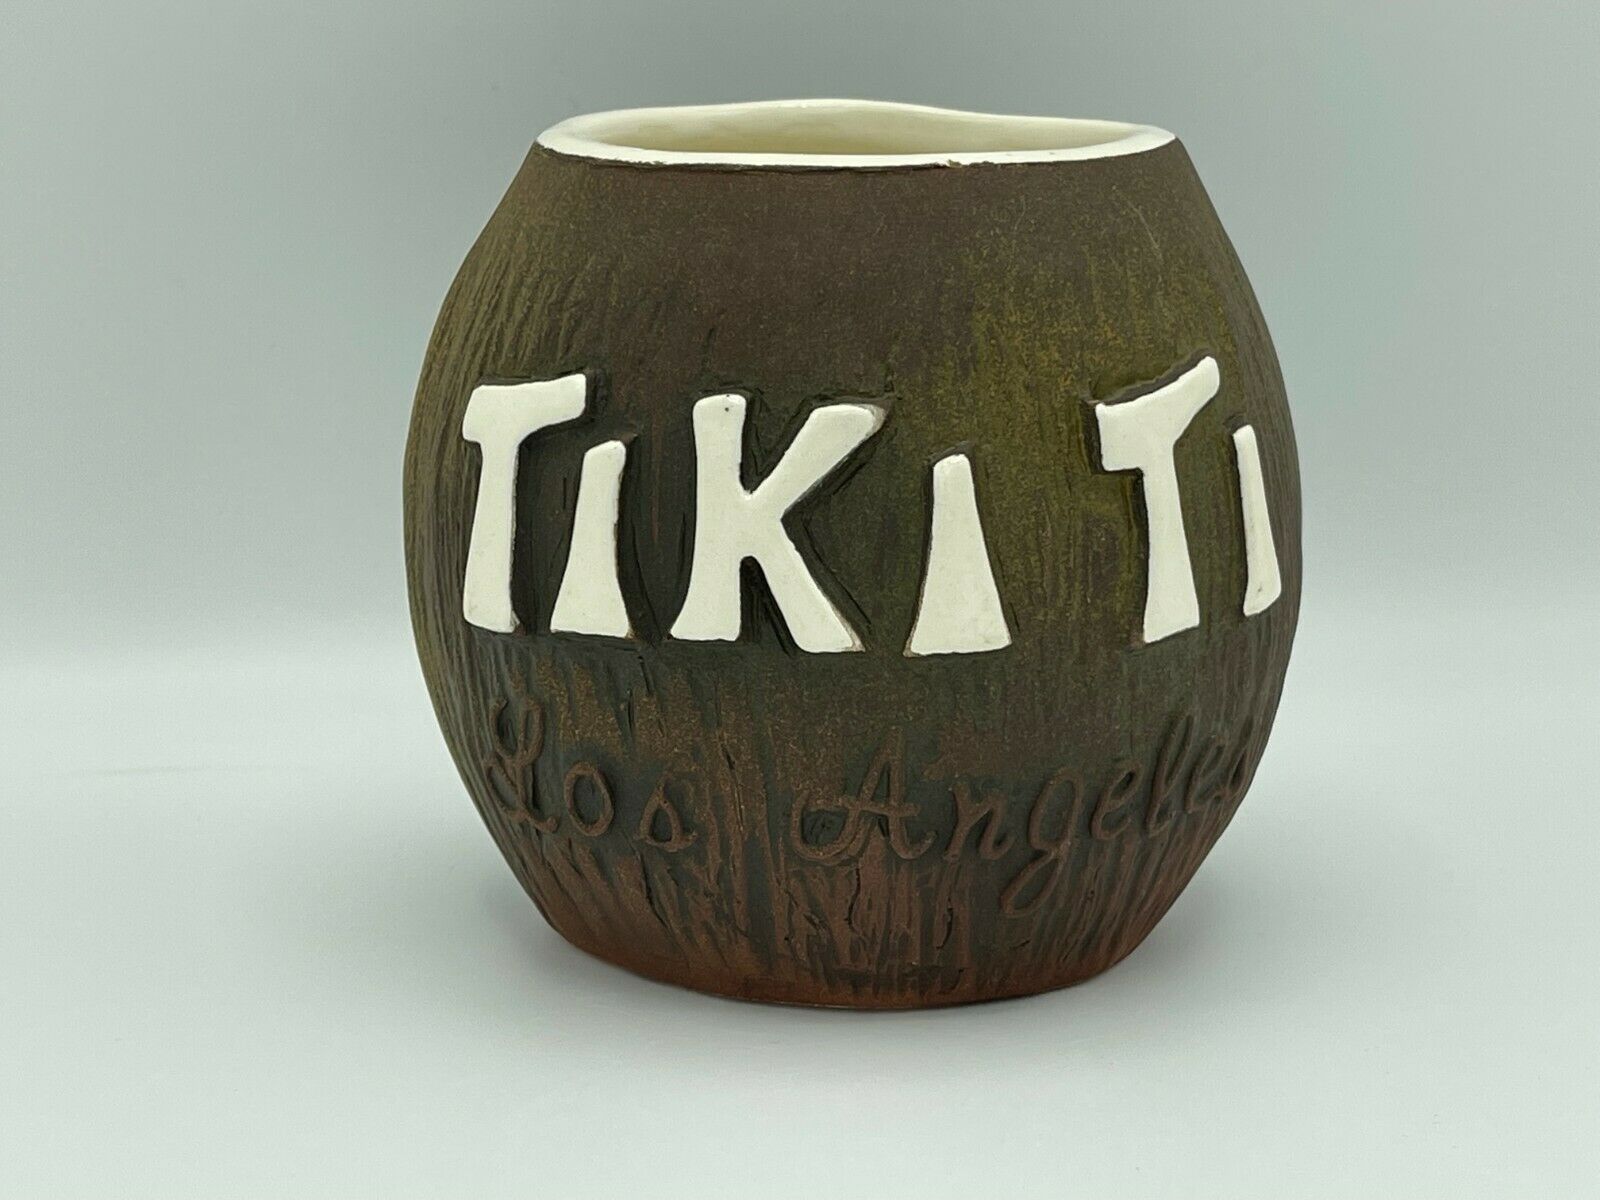 Tiki Ti Coconut Tiki Mug By Tiki Diablo Rare